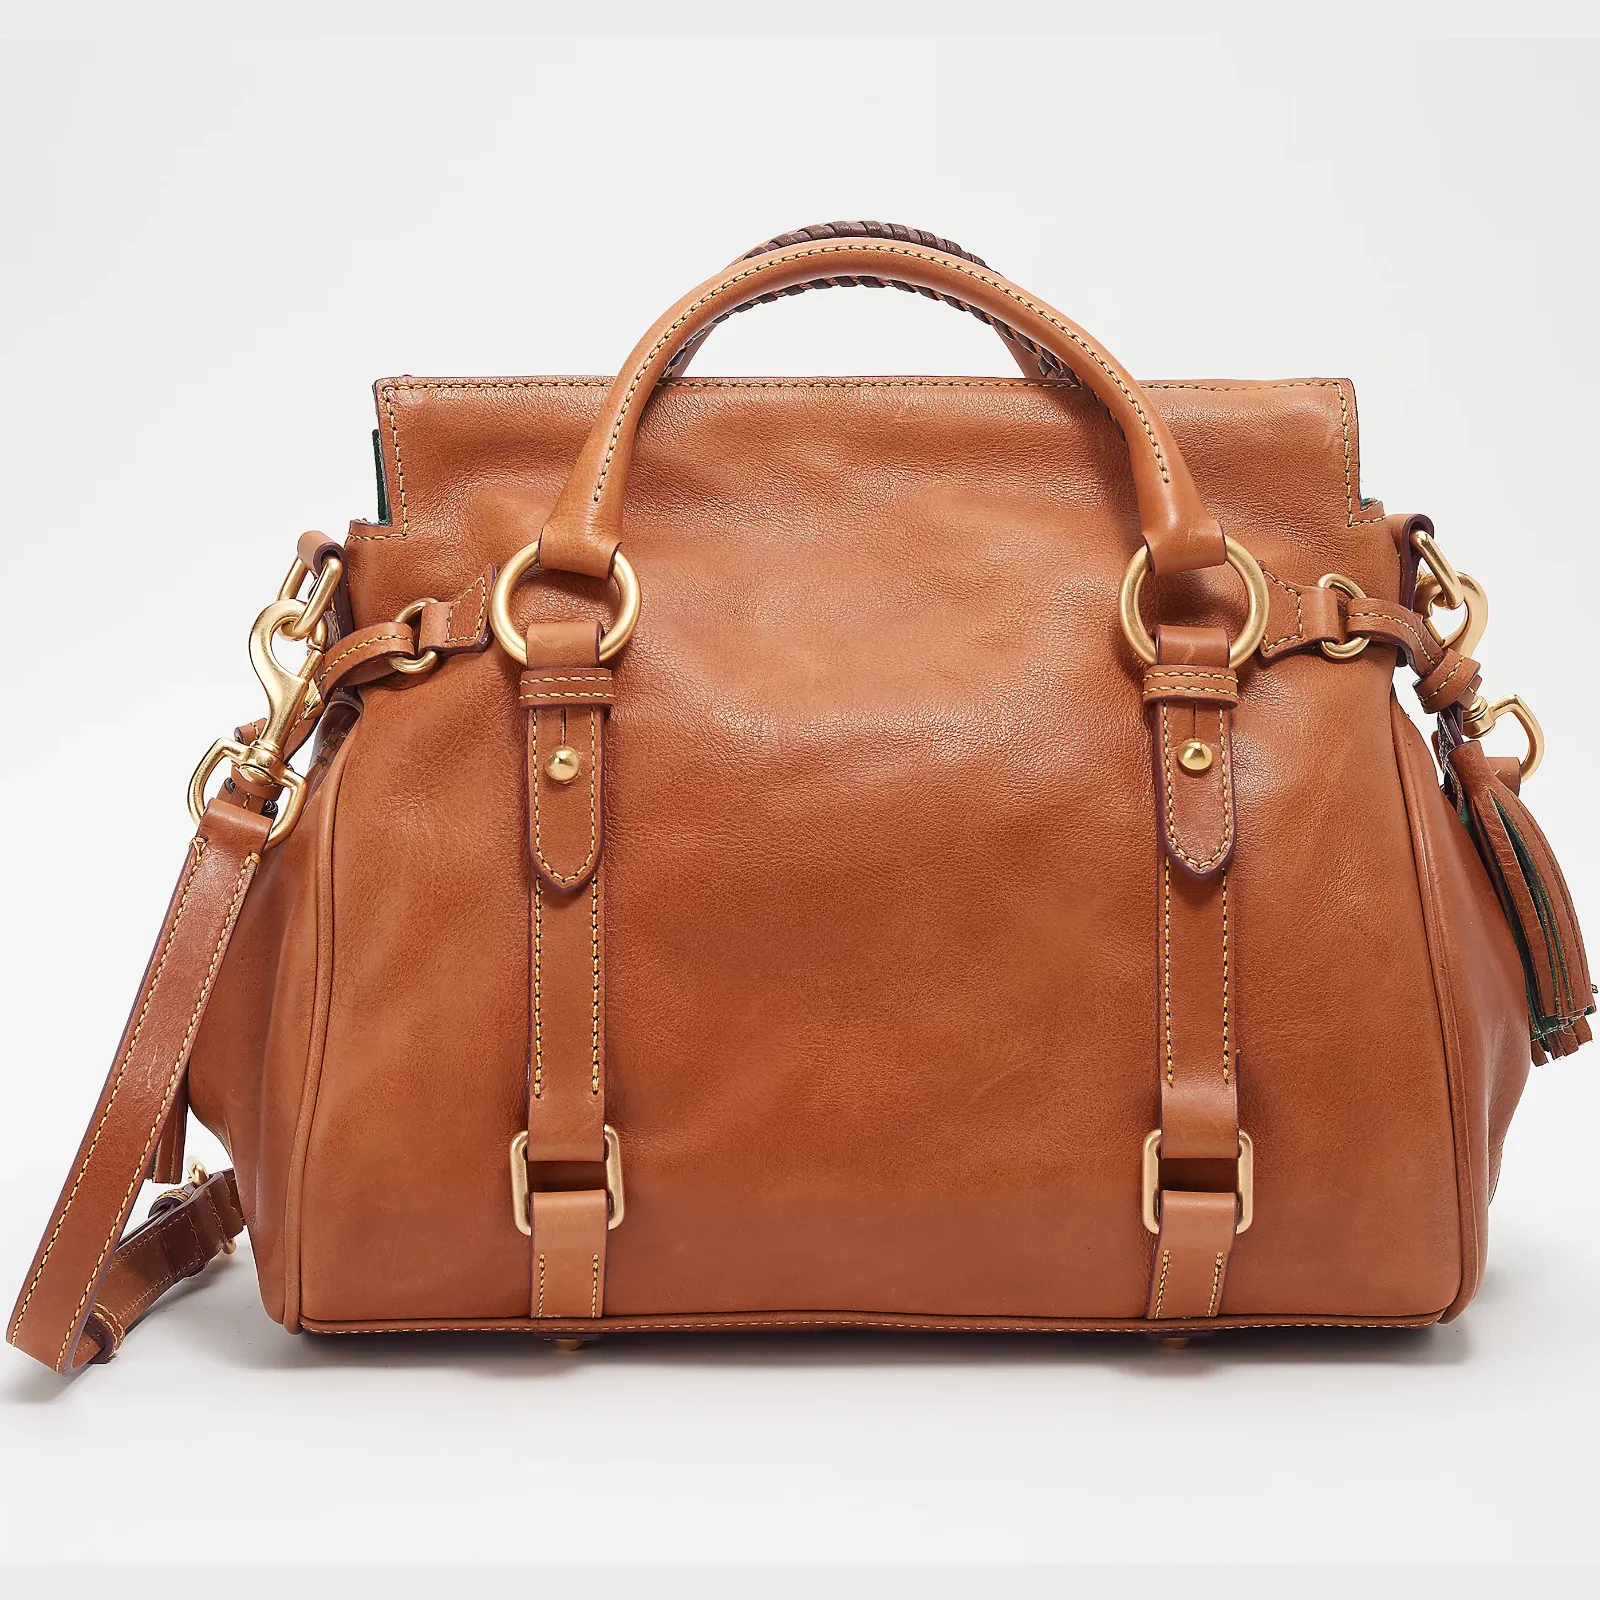 Free Dooney & Bourke Florentine Handbag